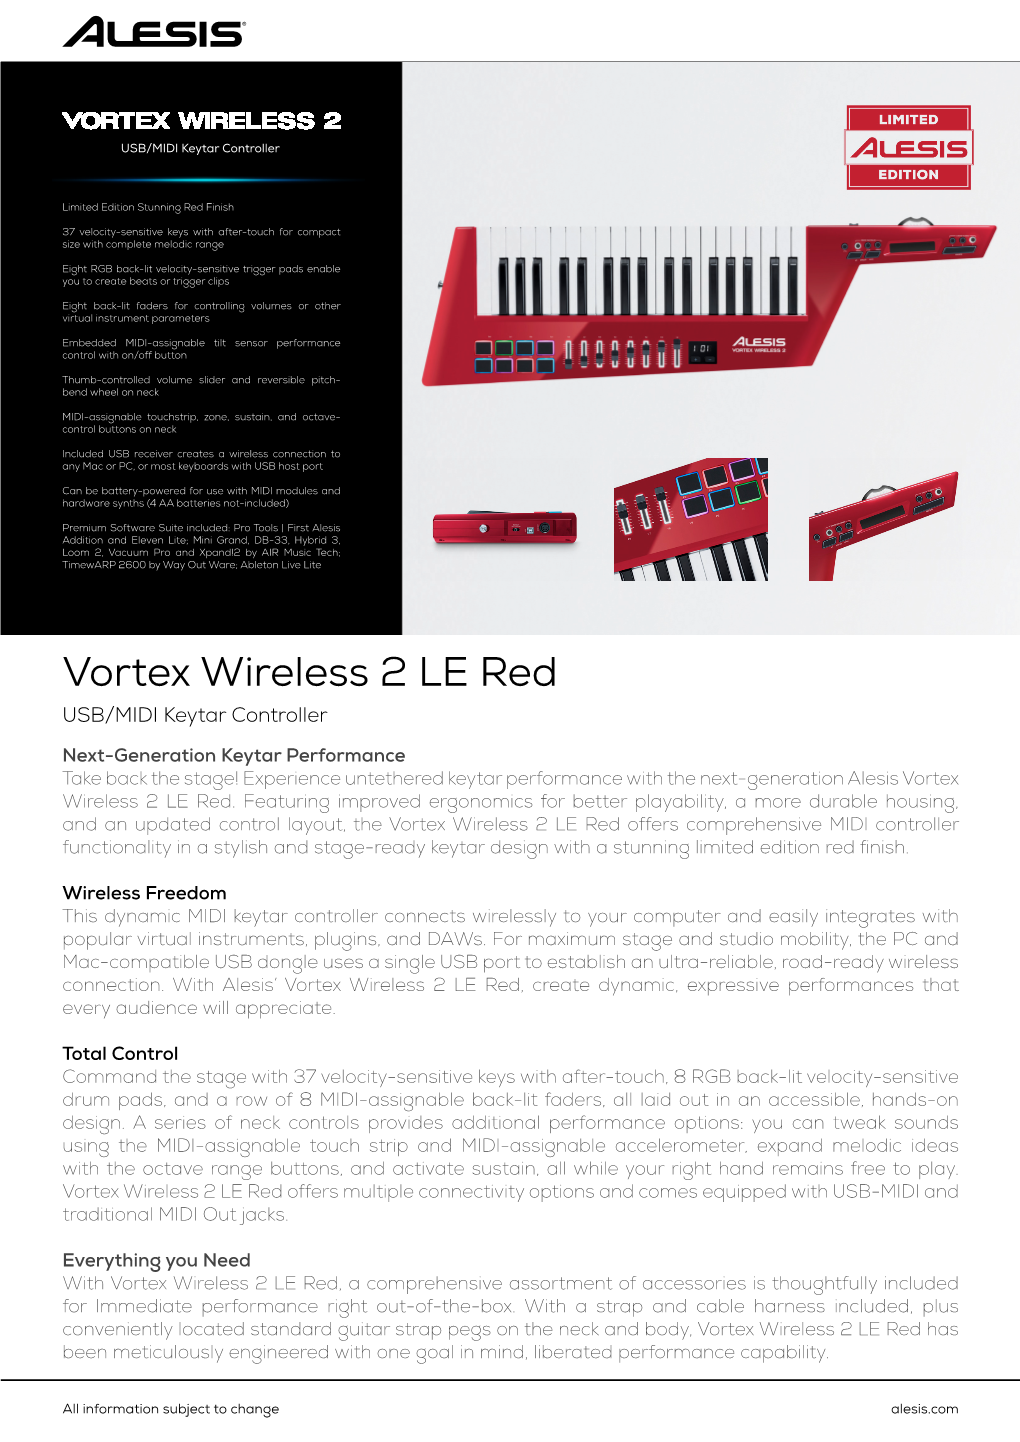 Vortex Wireless 2 LE Red USB/MIDI Keytar Controller